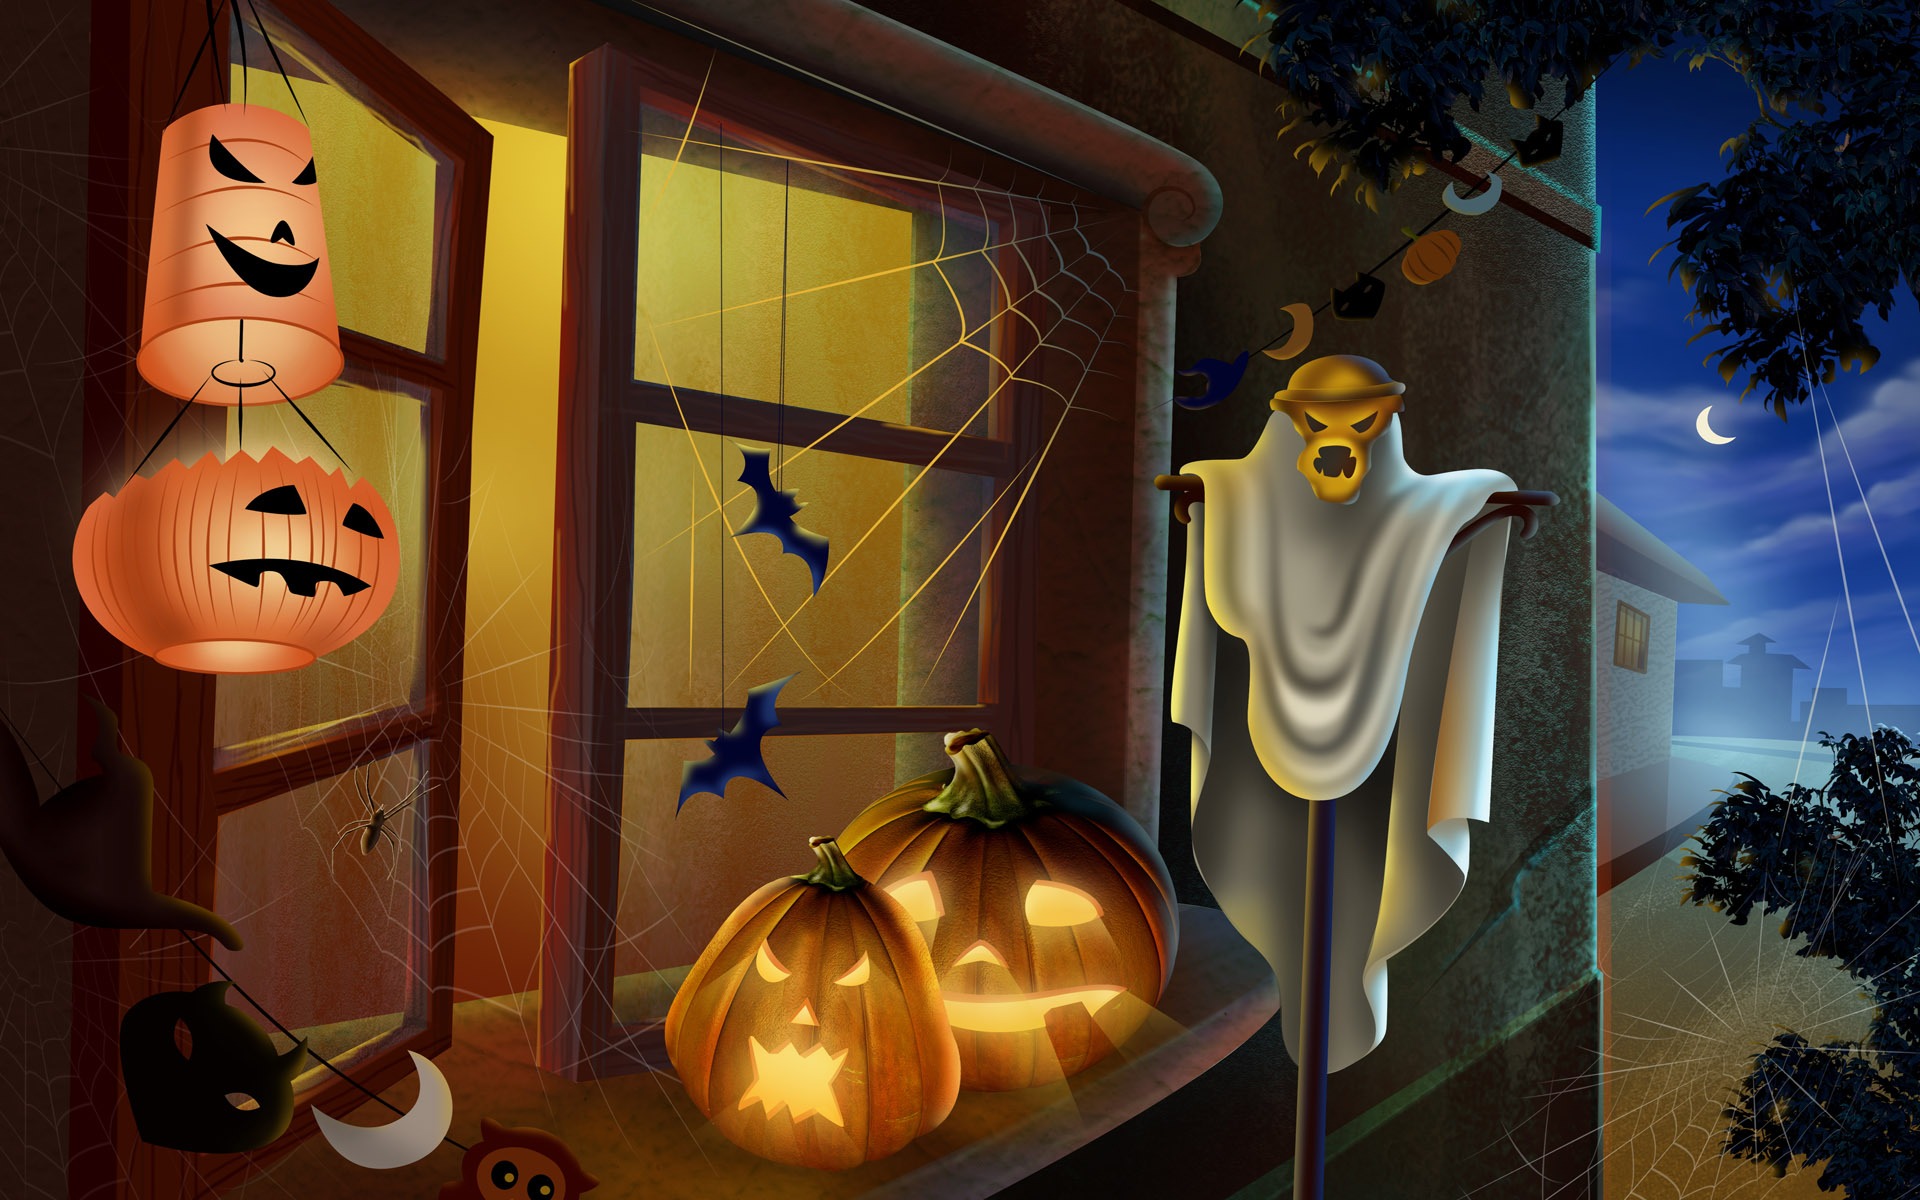 Fondos de Halloween temáticos (4) #7 - 1920x1200